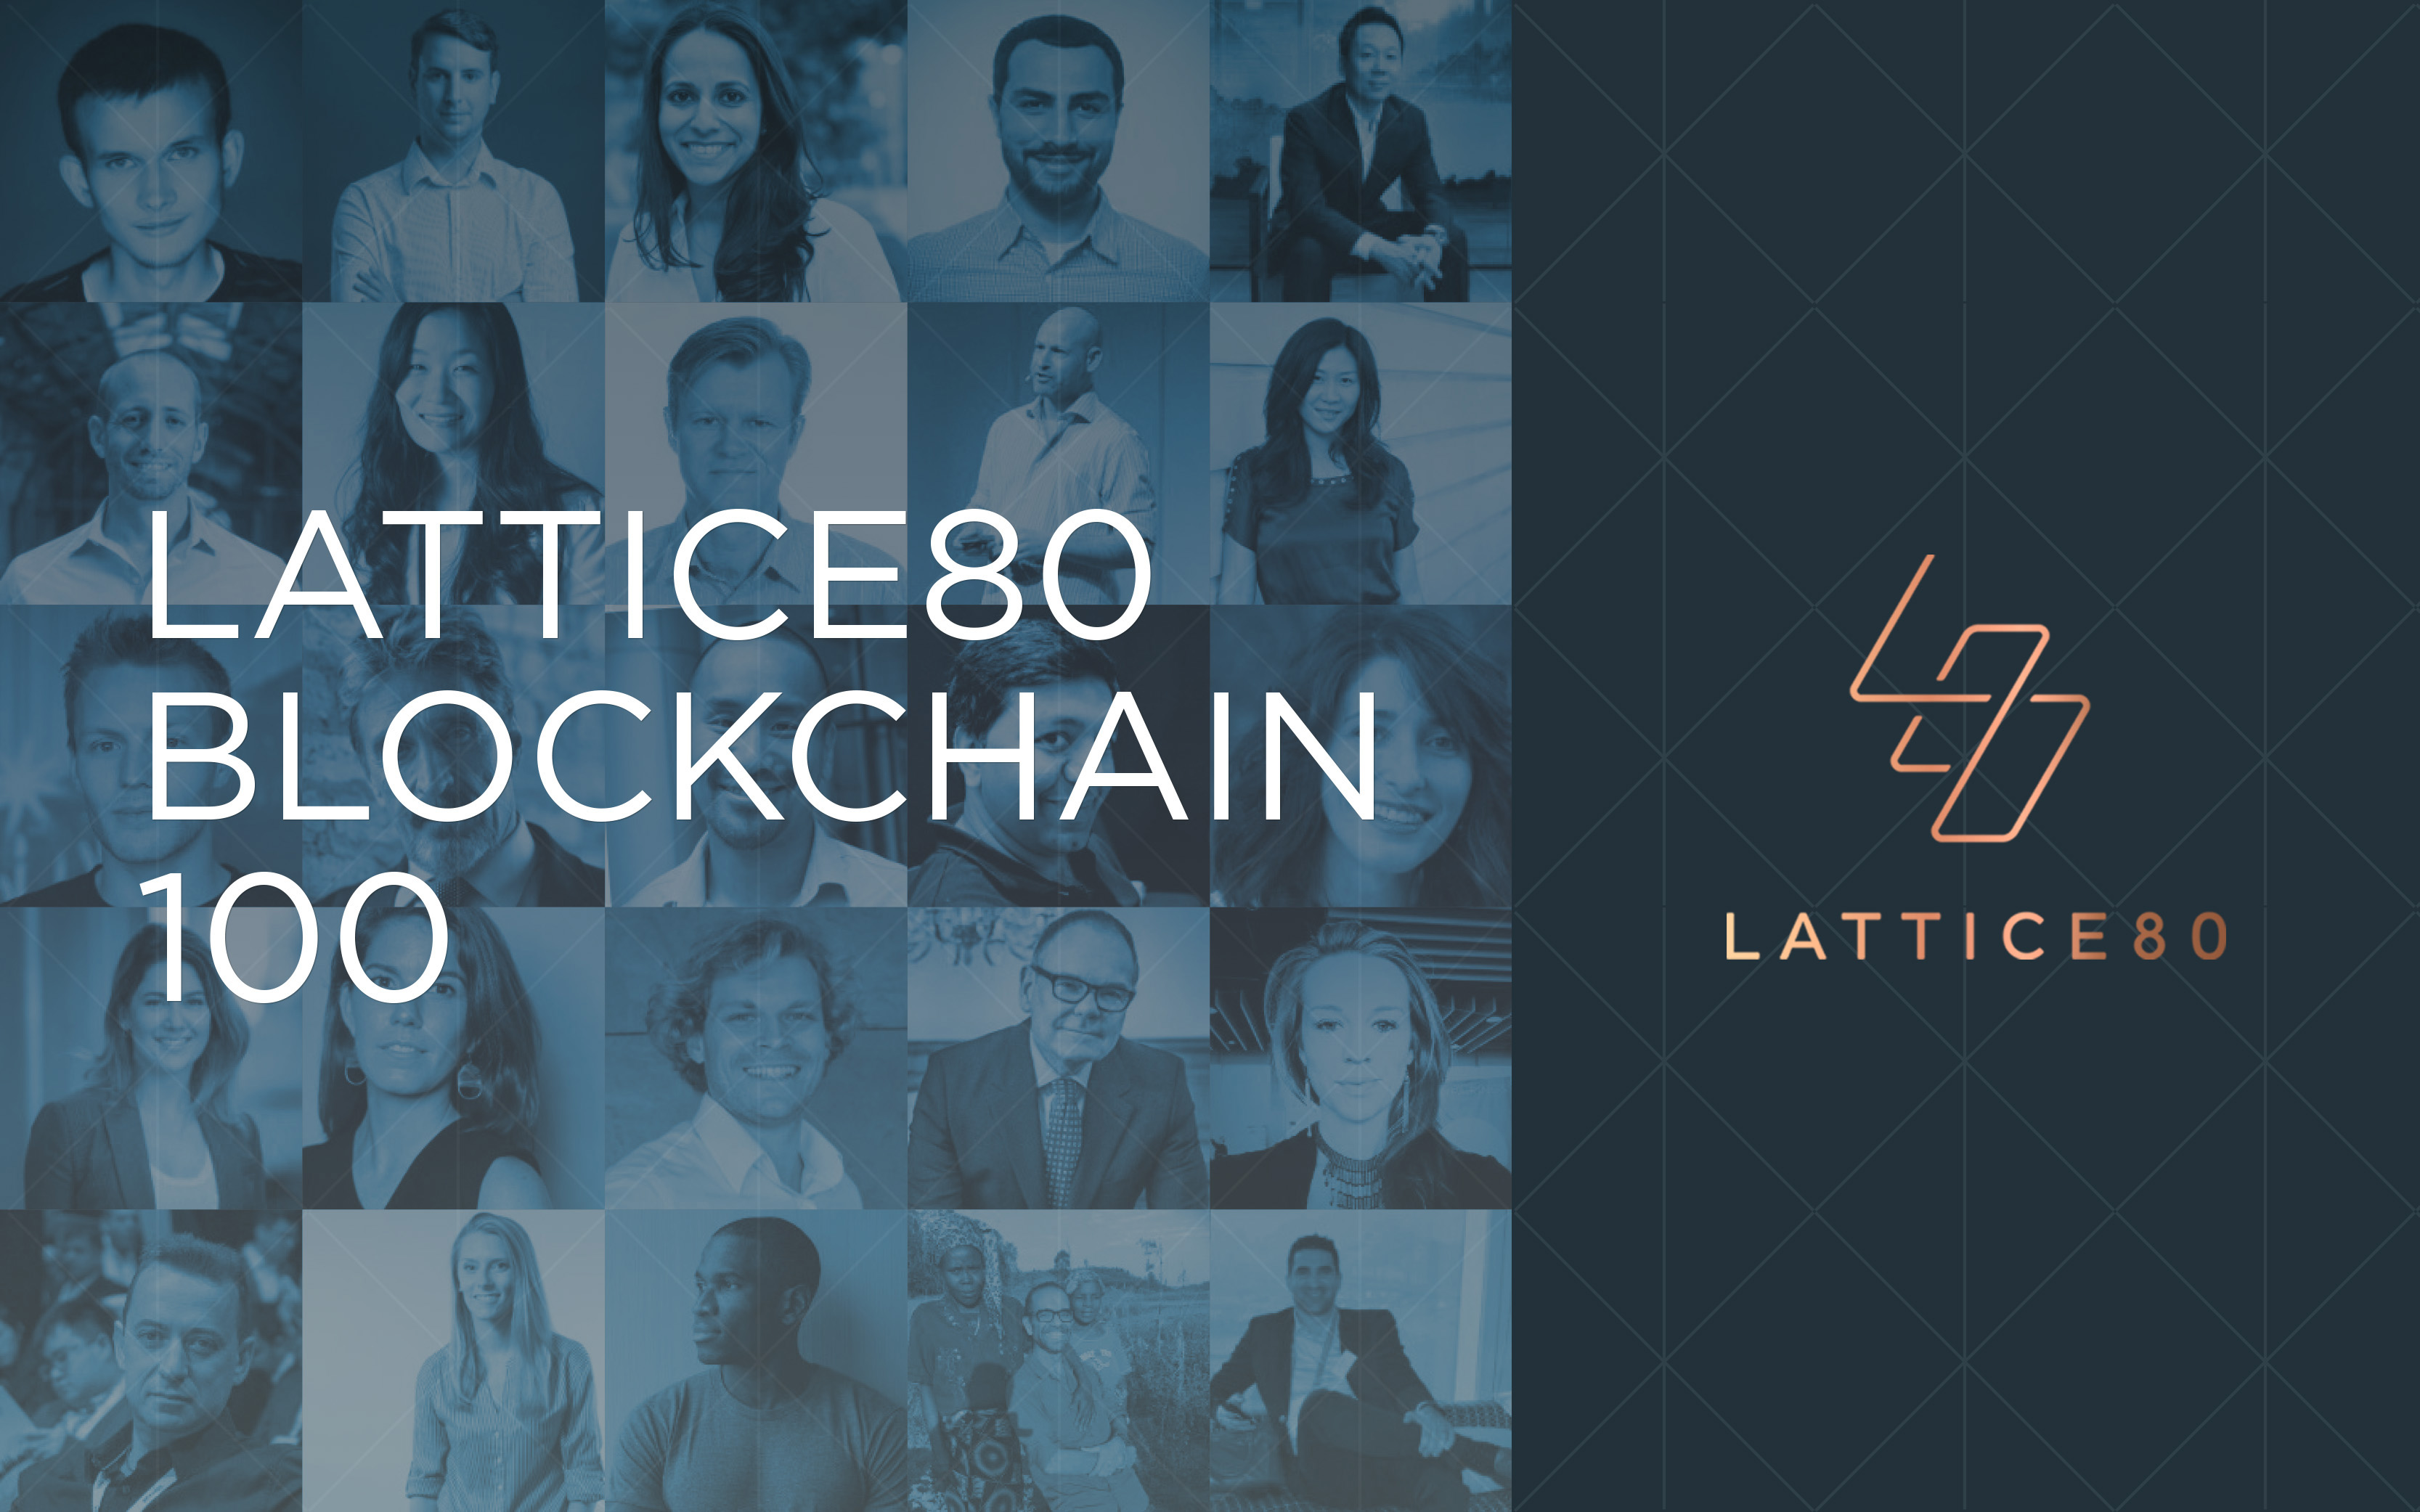 lattice80 blockchain 100 satyarth mishra.png